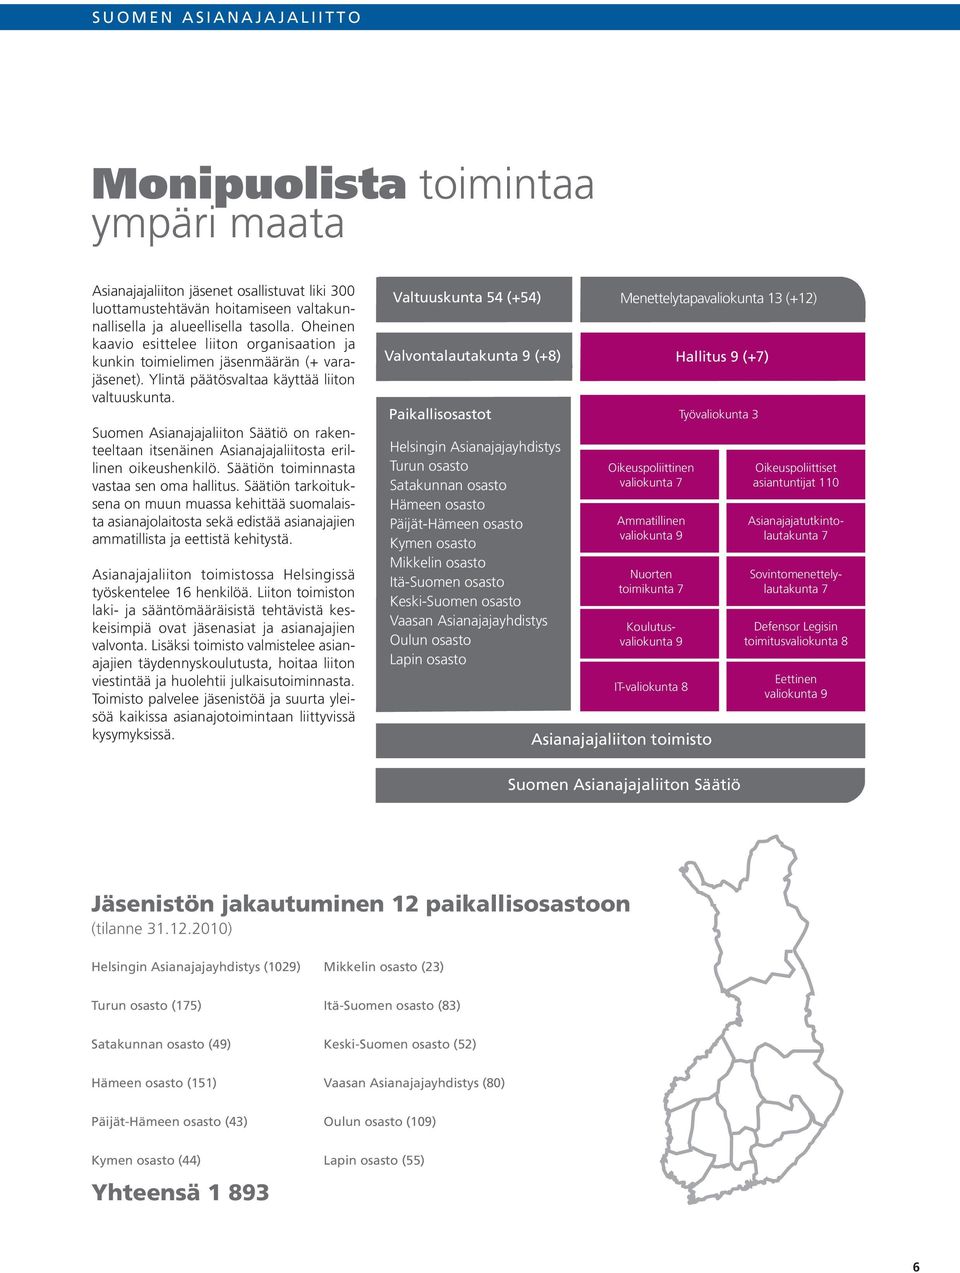 Suomen Asianajajaliiton Säätiö on rakenteeltaan itsenäinen Asianajajaliitosta erillinen oikeushenkilö. Säätiön toiminnasta vastaa sen oma hallitus.